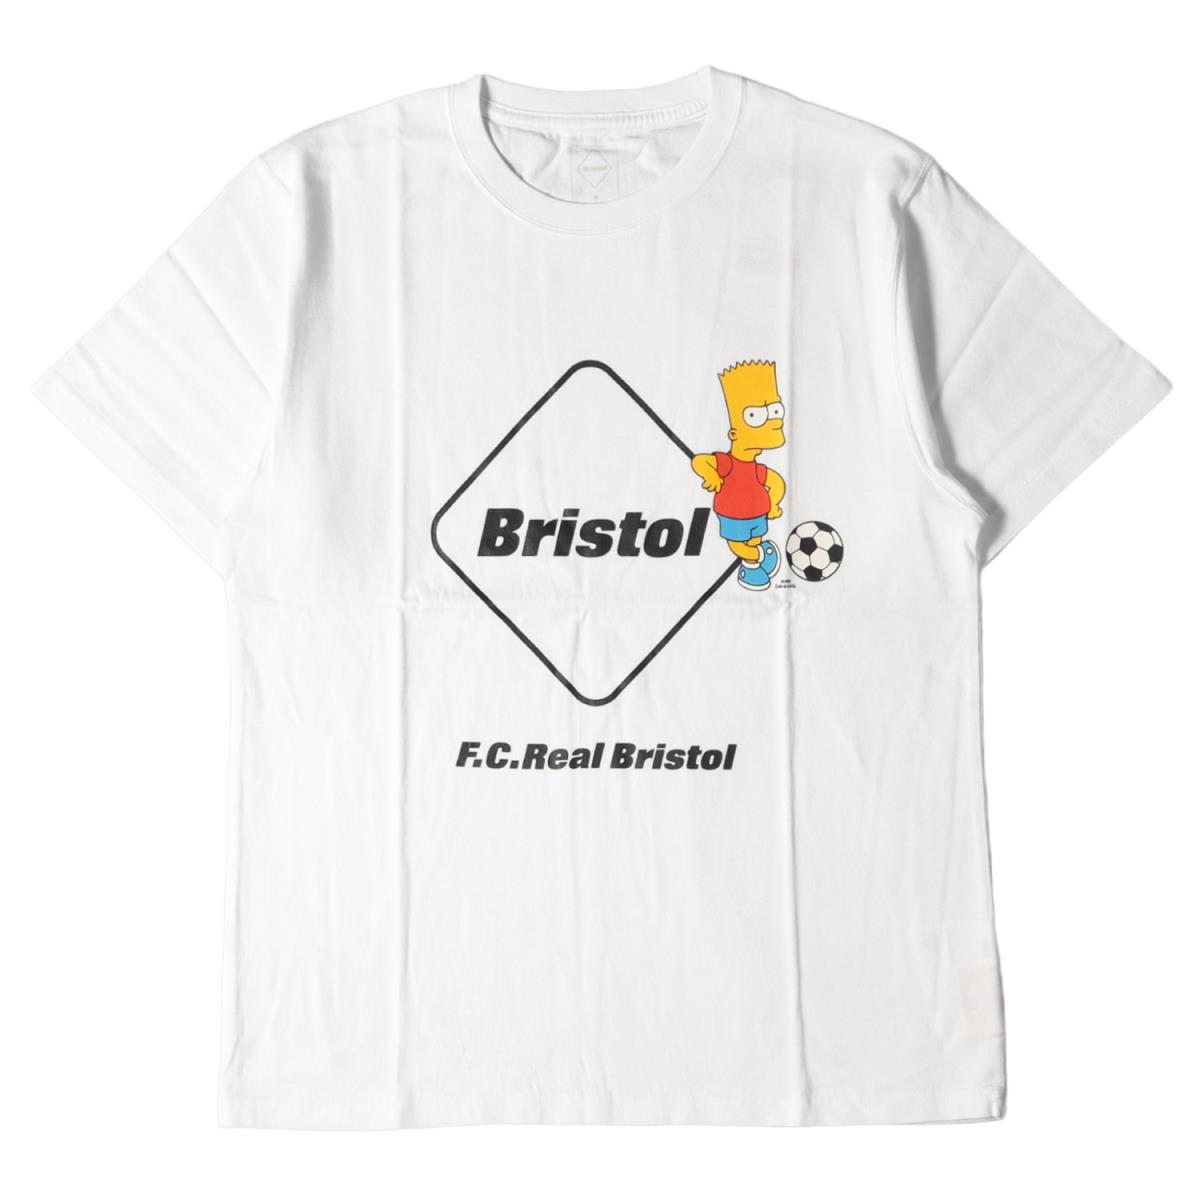 トップス, Tシャツ・カットソー F.C.Real Bristol T THE SIMPSONS T EMBLEM TEE 19SS M FCRB K3410